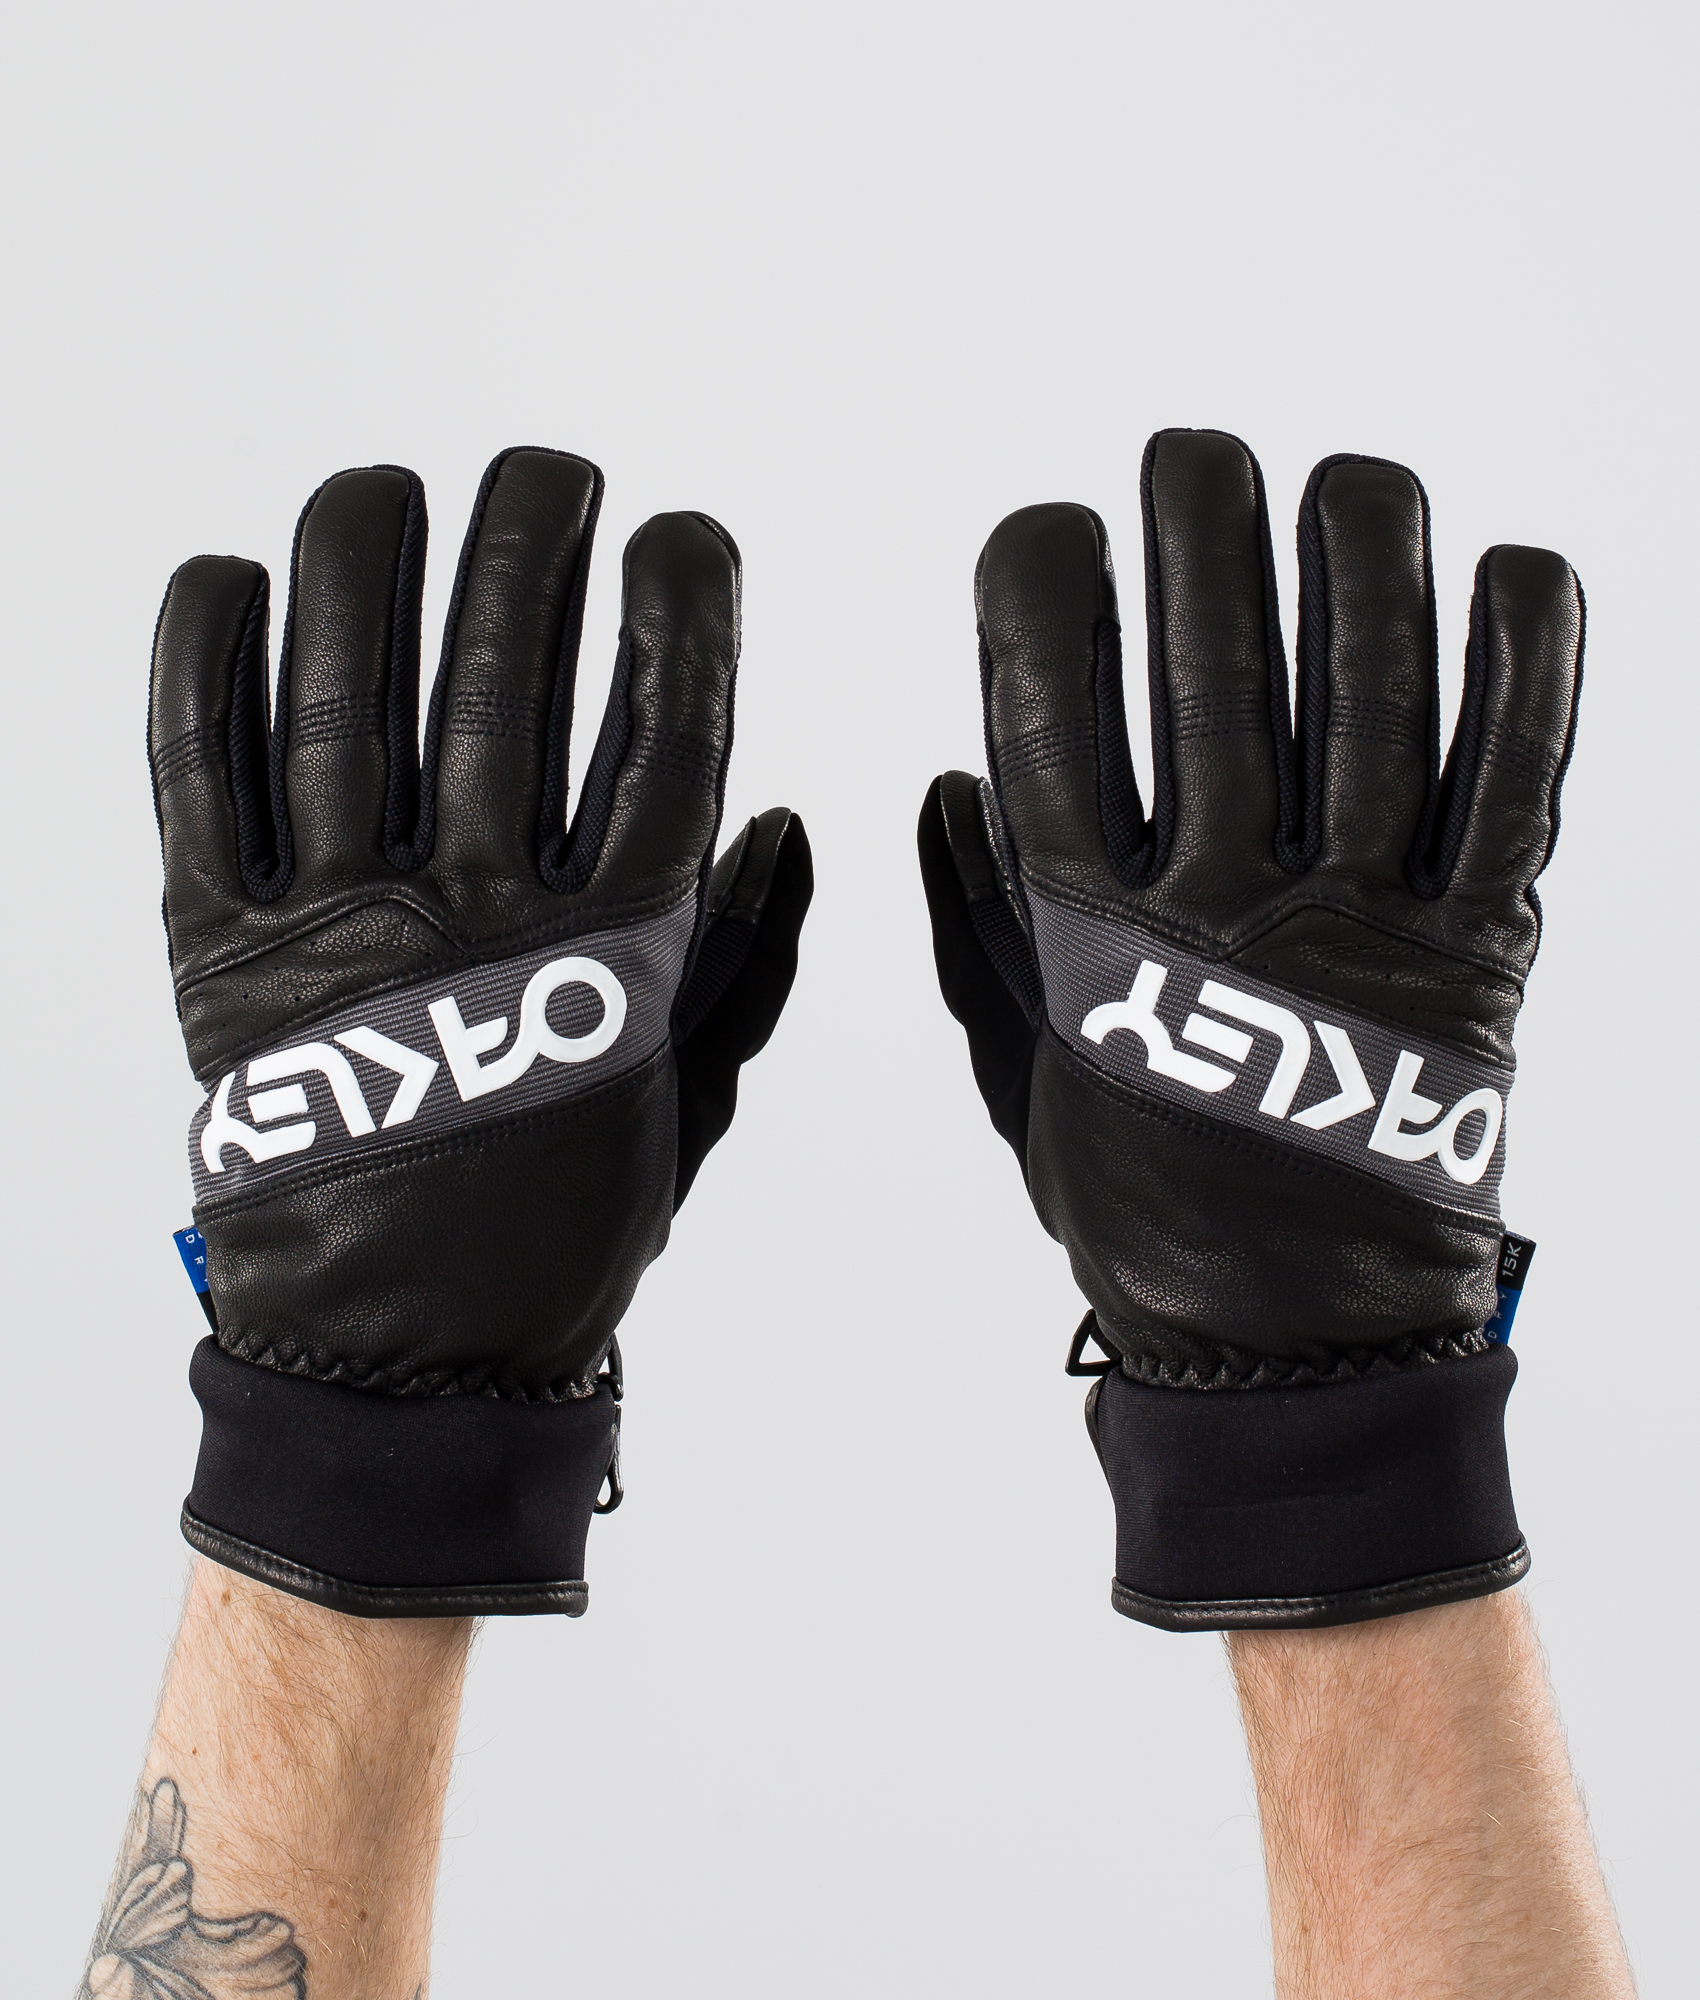 oakley factory winter glove 2